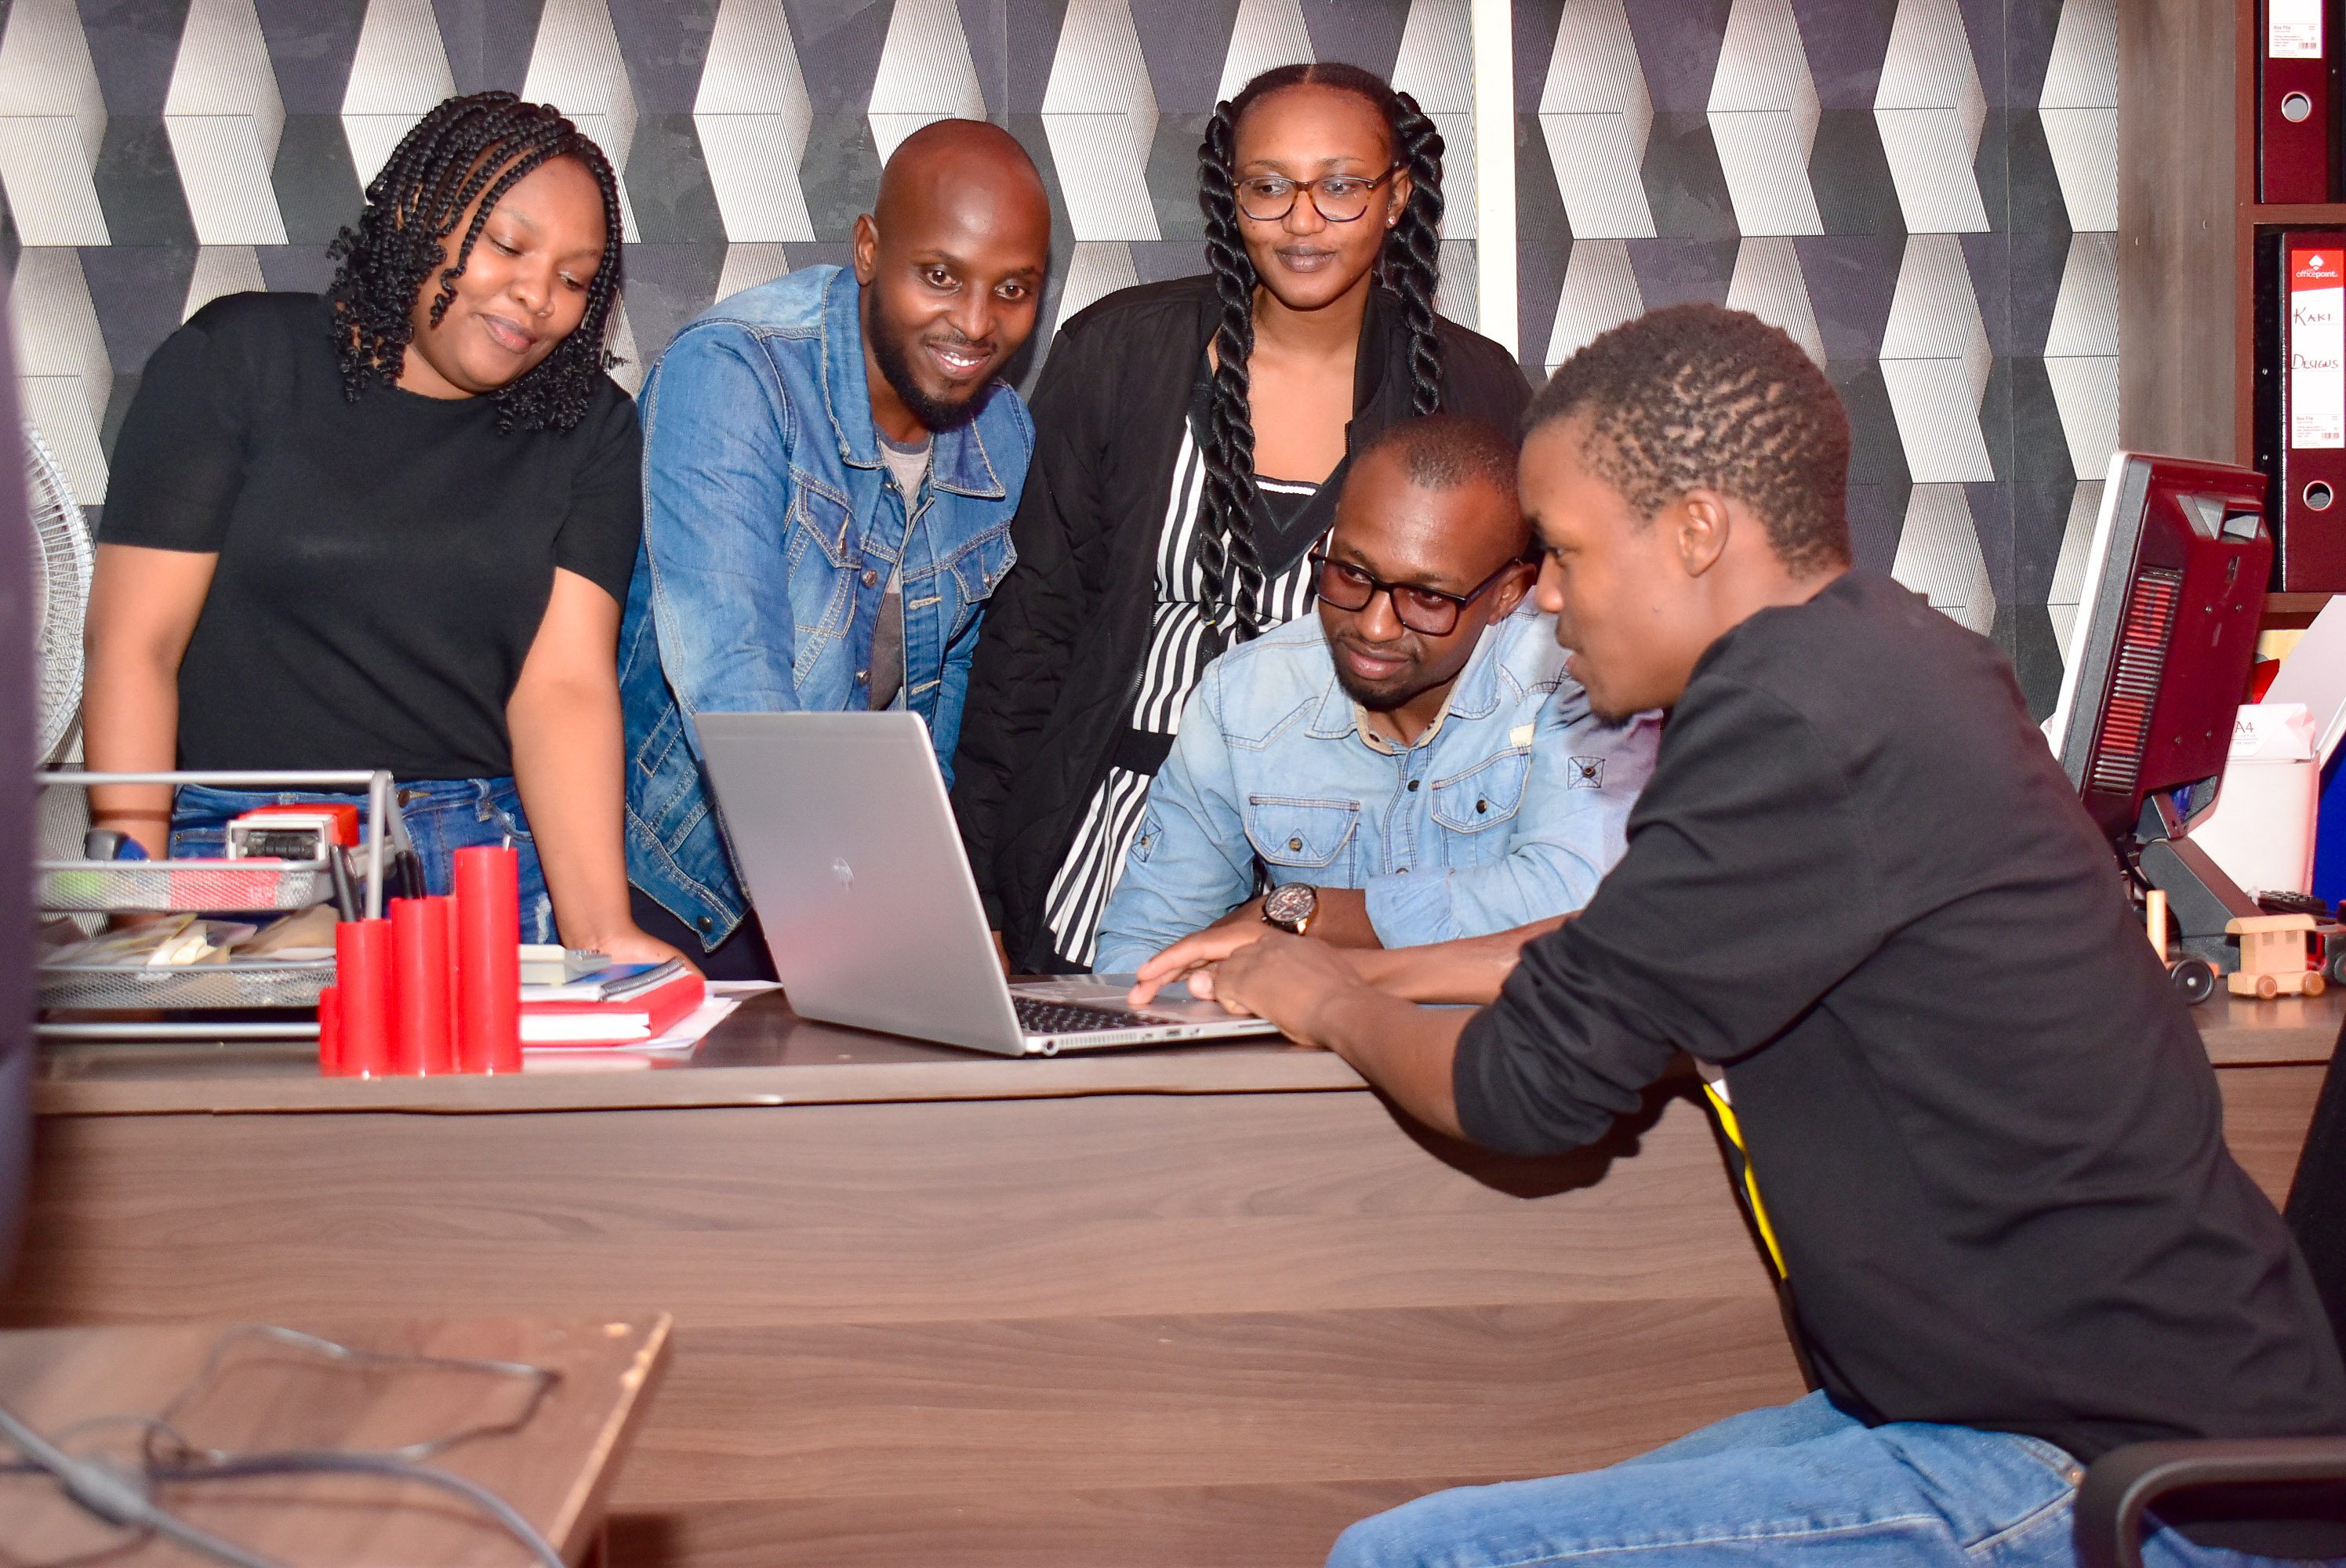 MGiHub Teams| Innovation hub in Nakuru